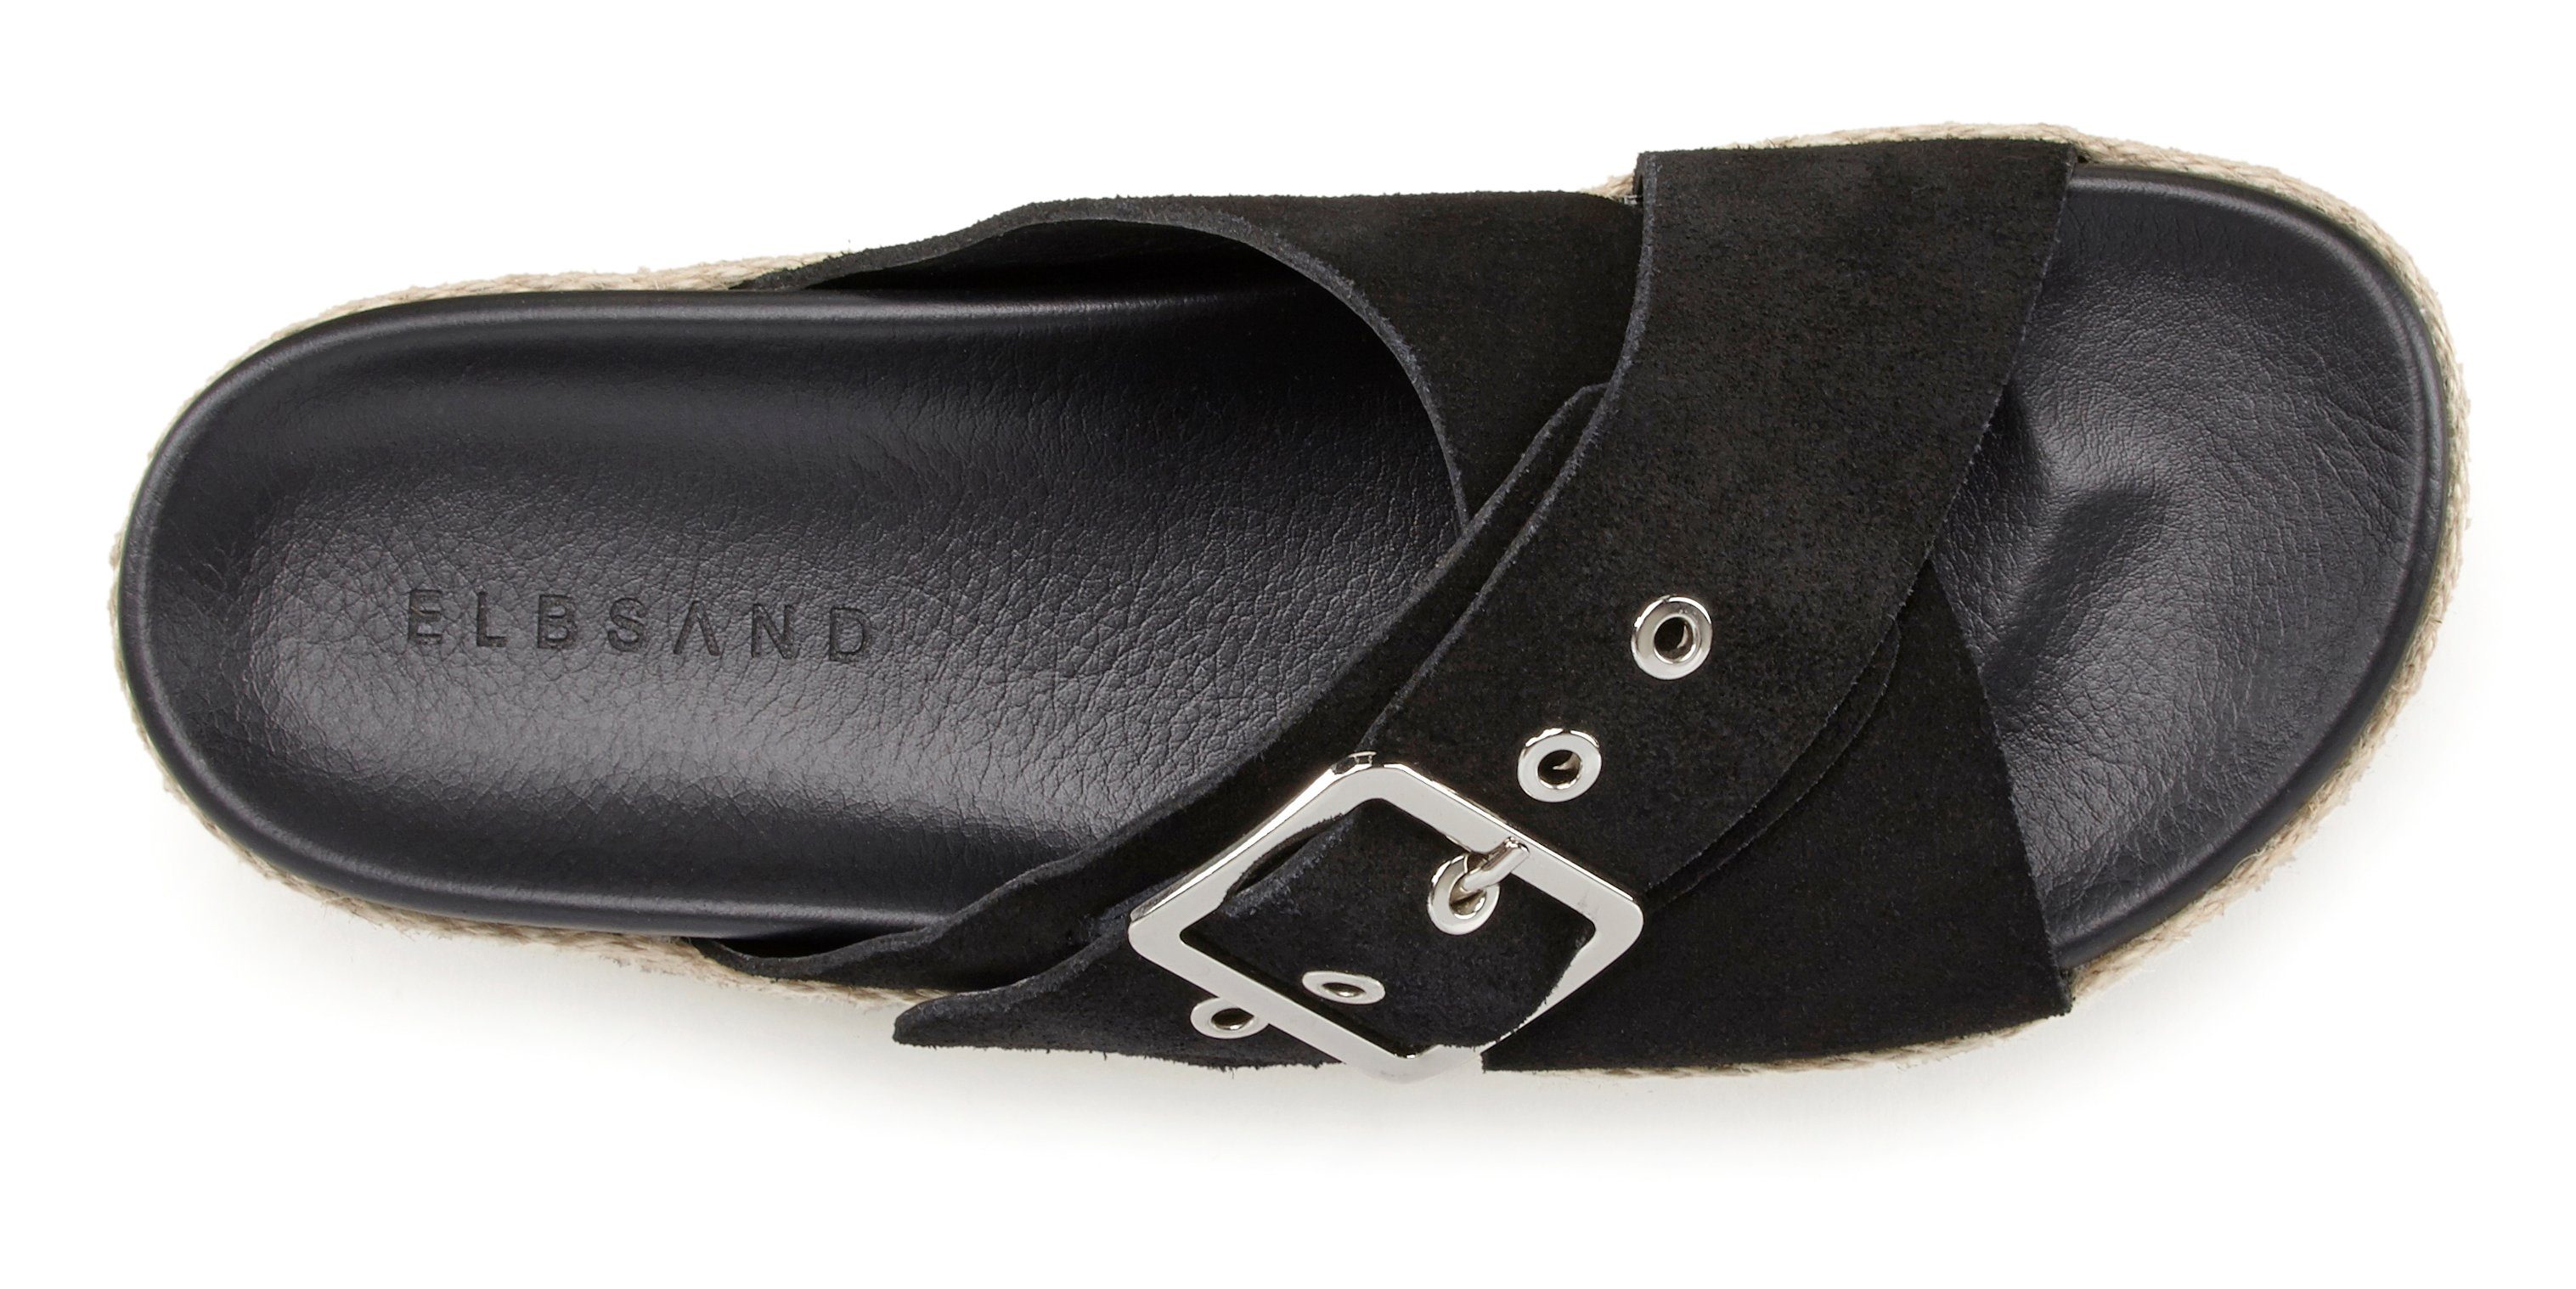 Elbsand Pantolette Mule, Sandale, offener Plateauabsatz aus Schuh mit Leder